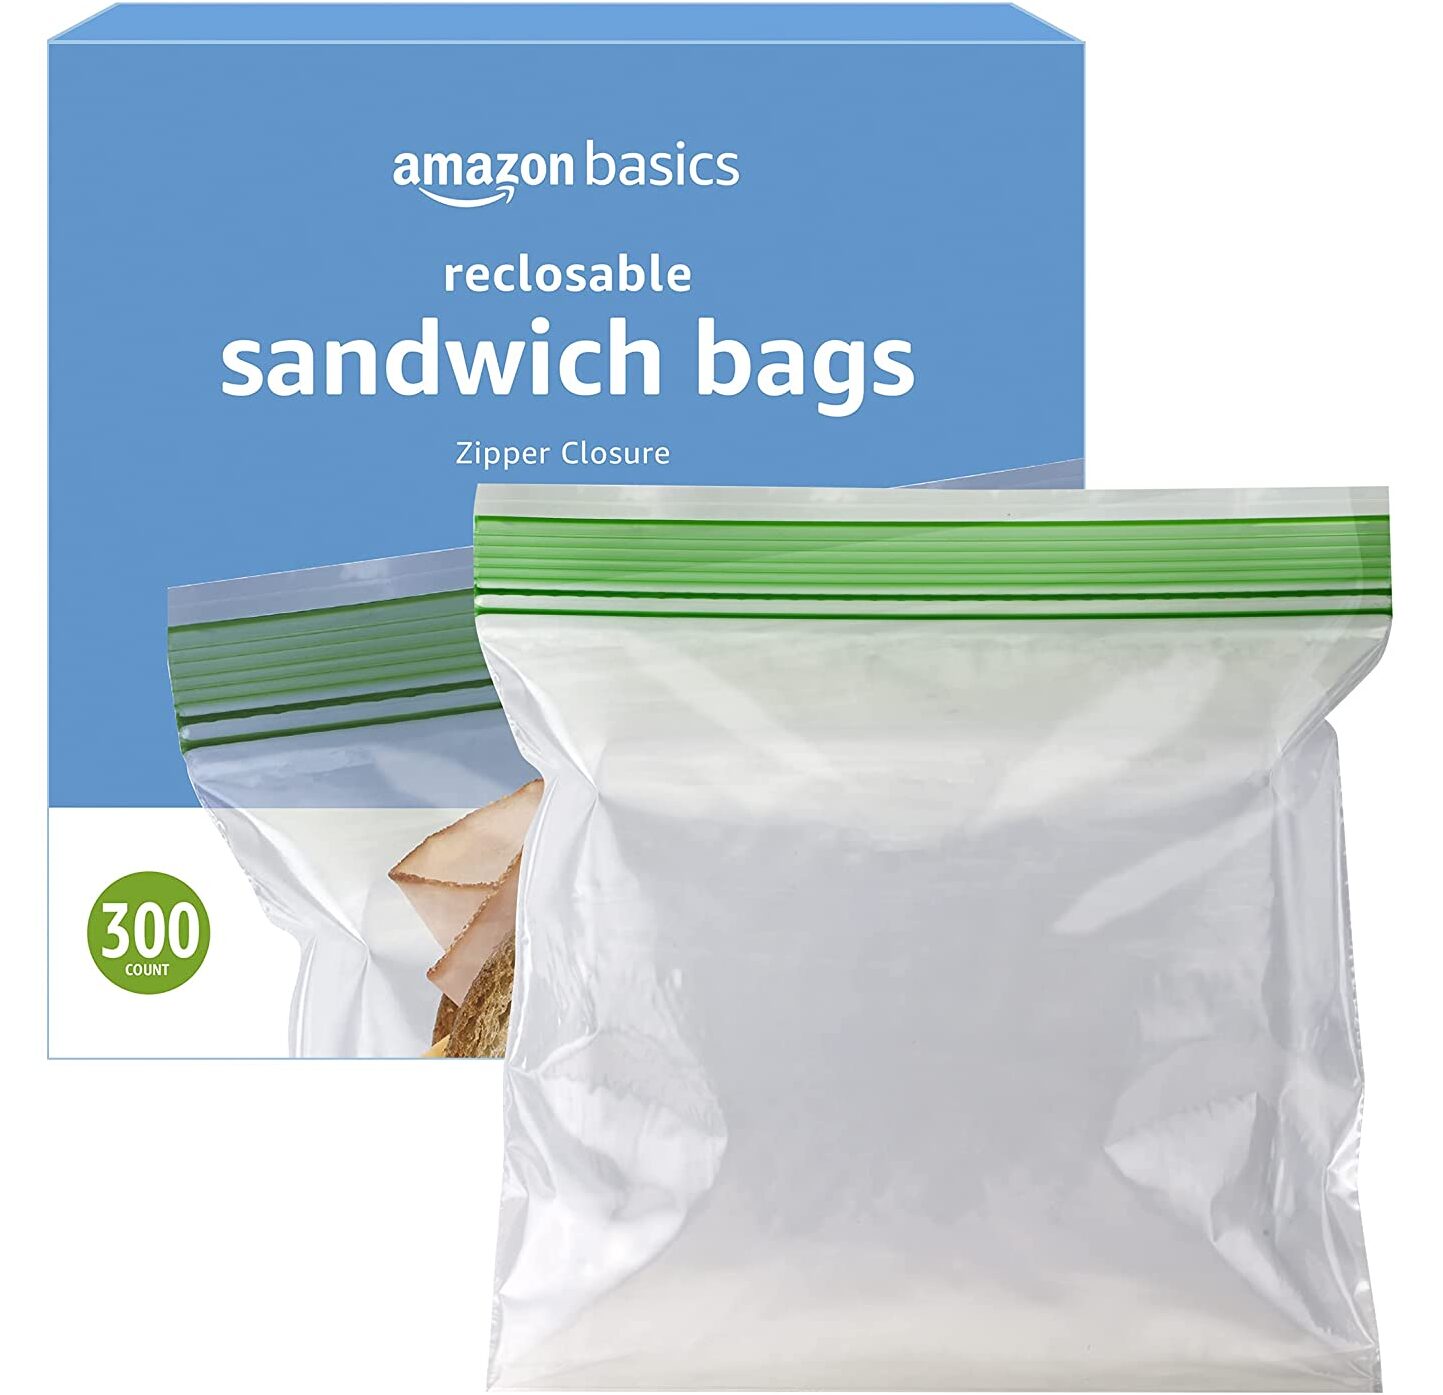 Sandwich bags